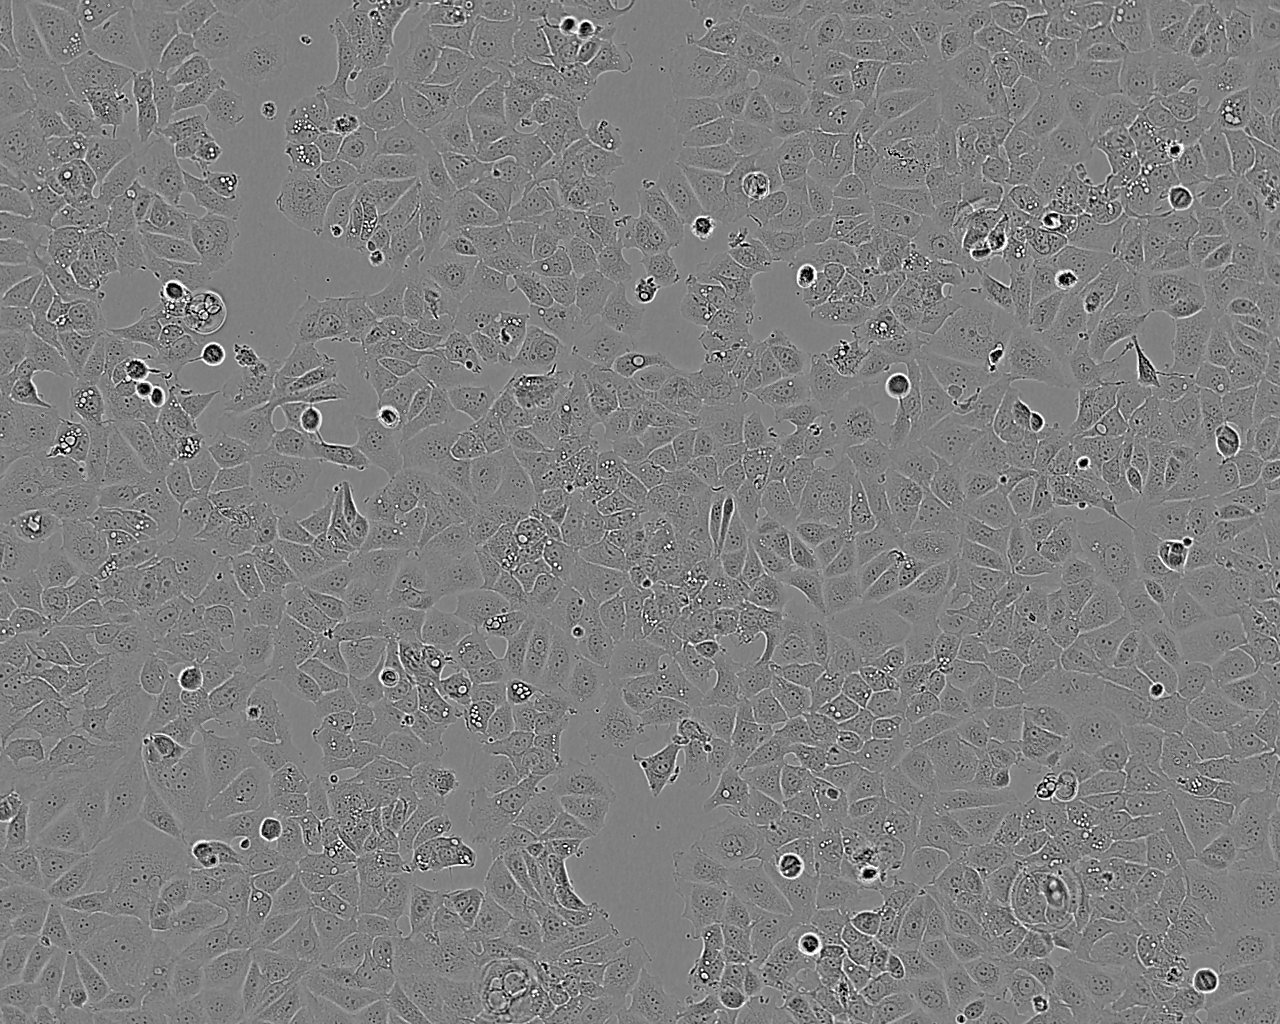 KP-2 Cell:人胰腺癌细胞系